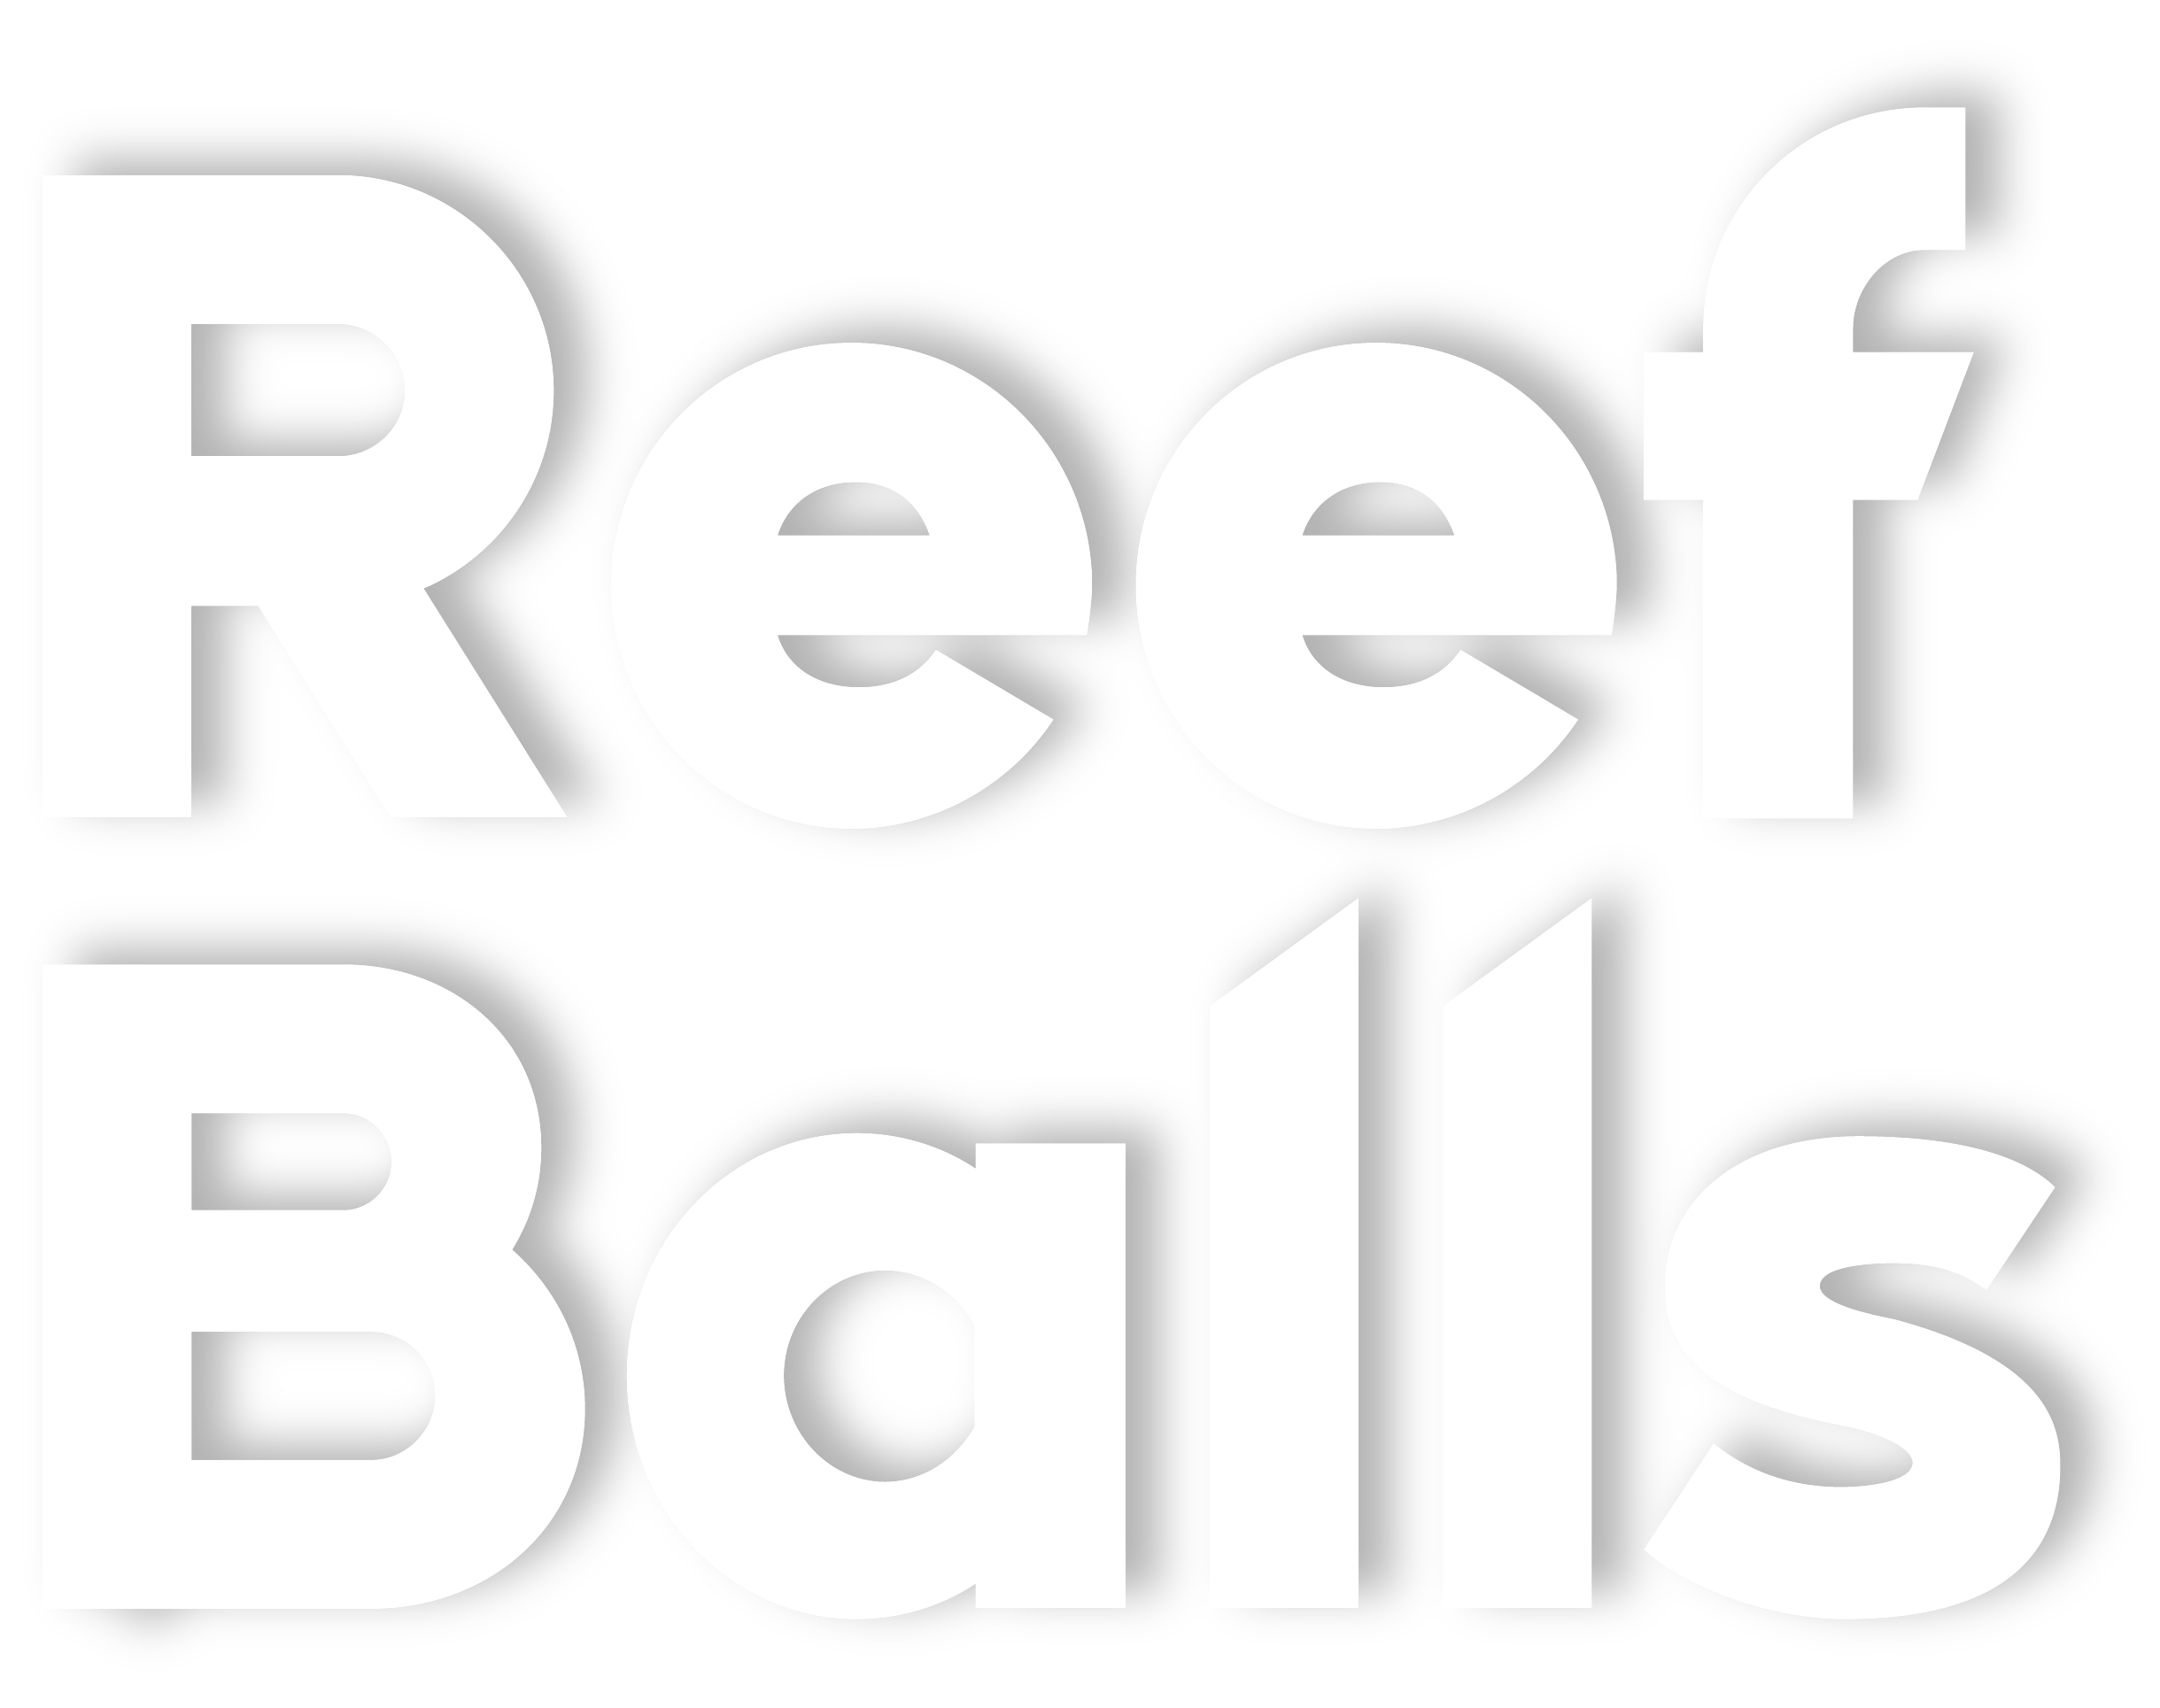 Reef Balls